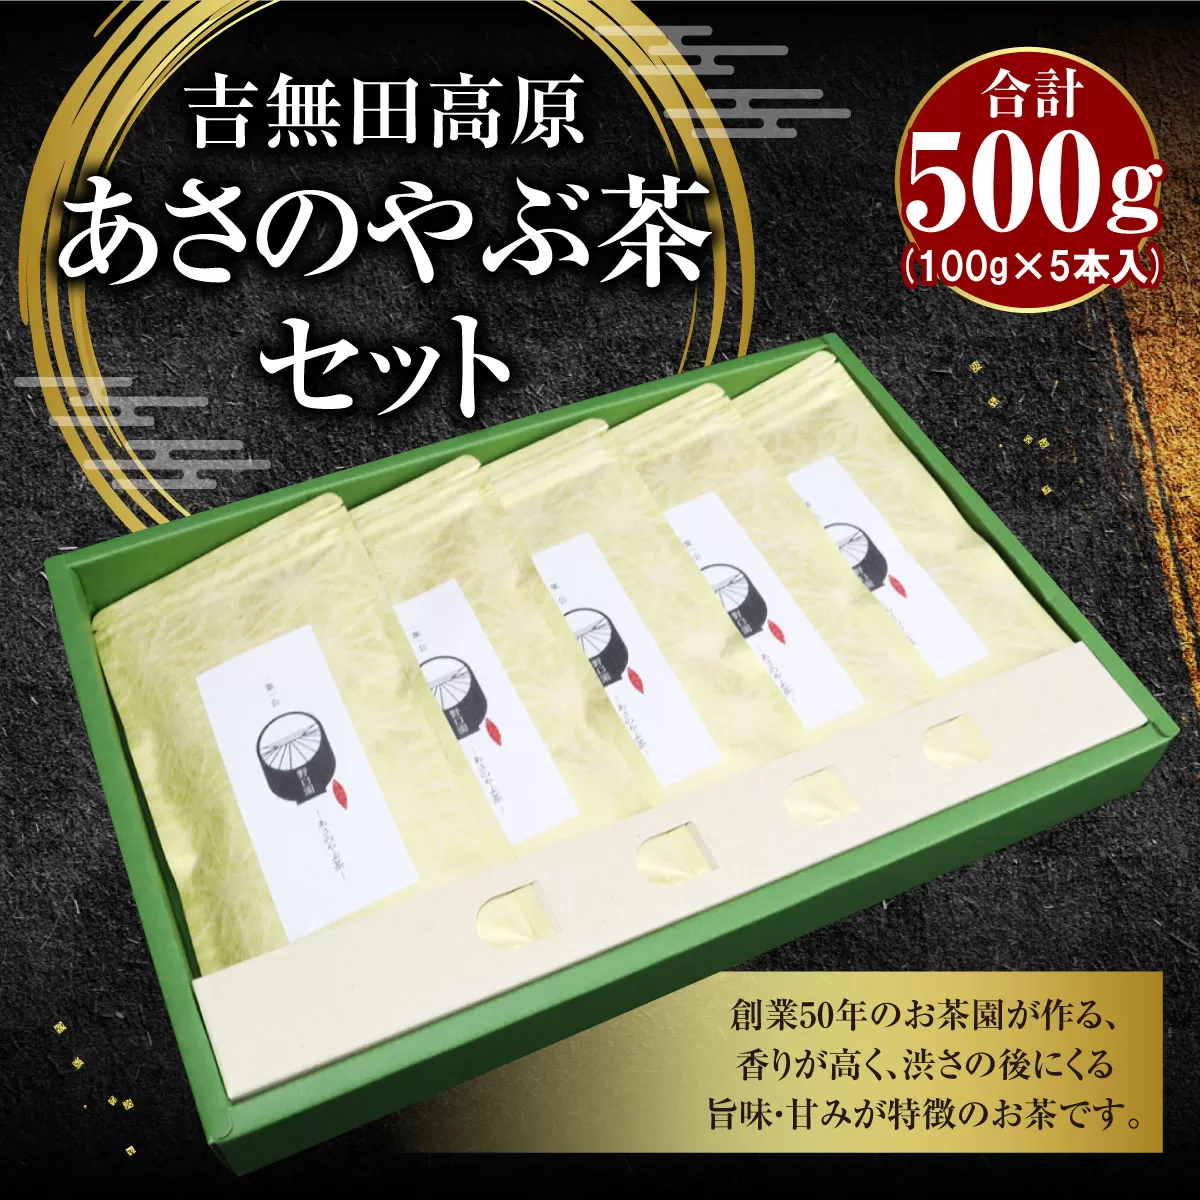 吉無田高原あさのやぶ茶セット(100g×5本入り) お茶乃のぐち AW02